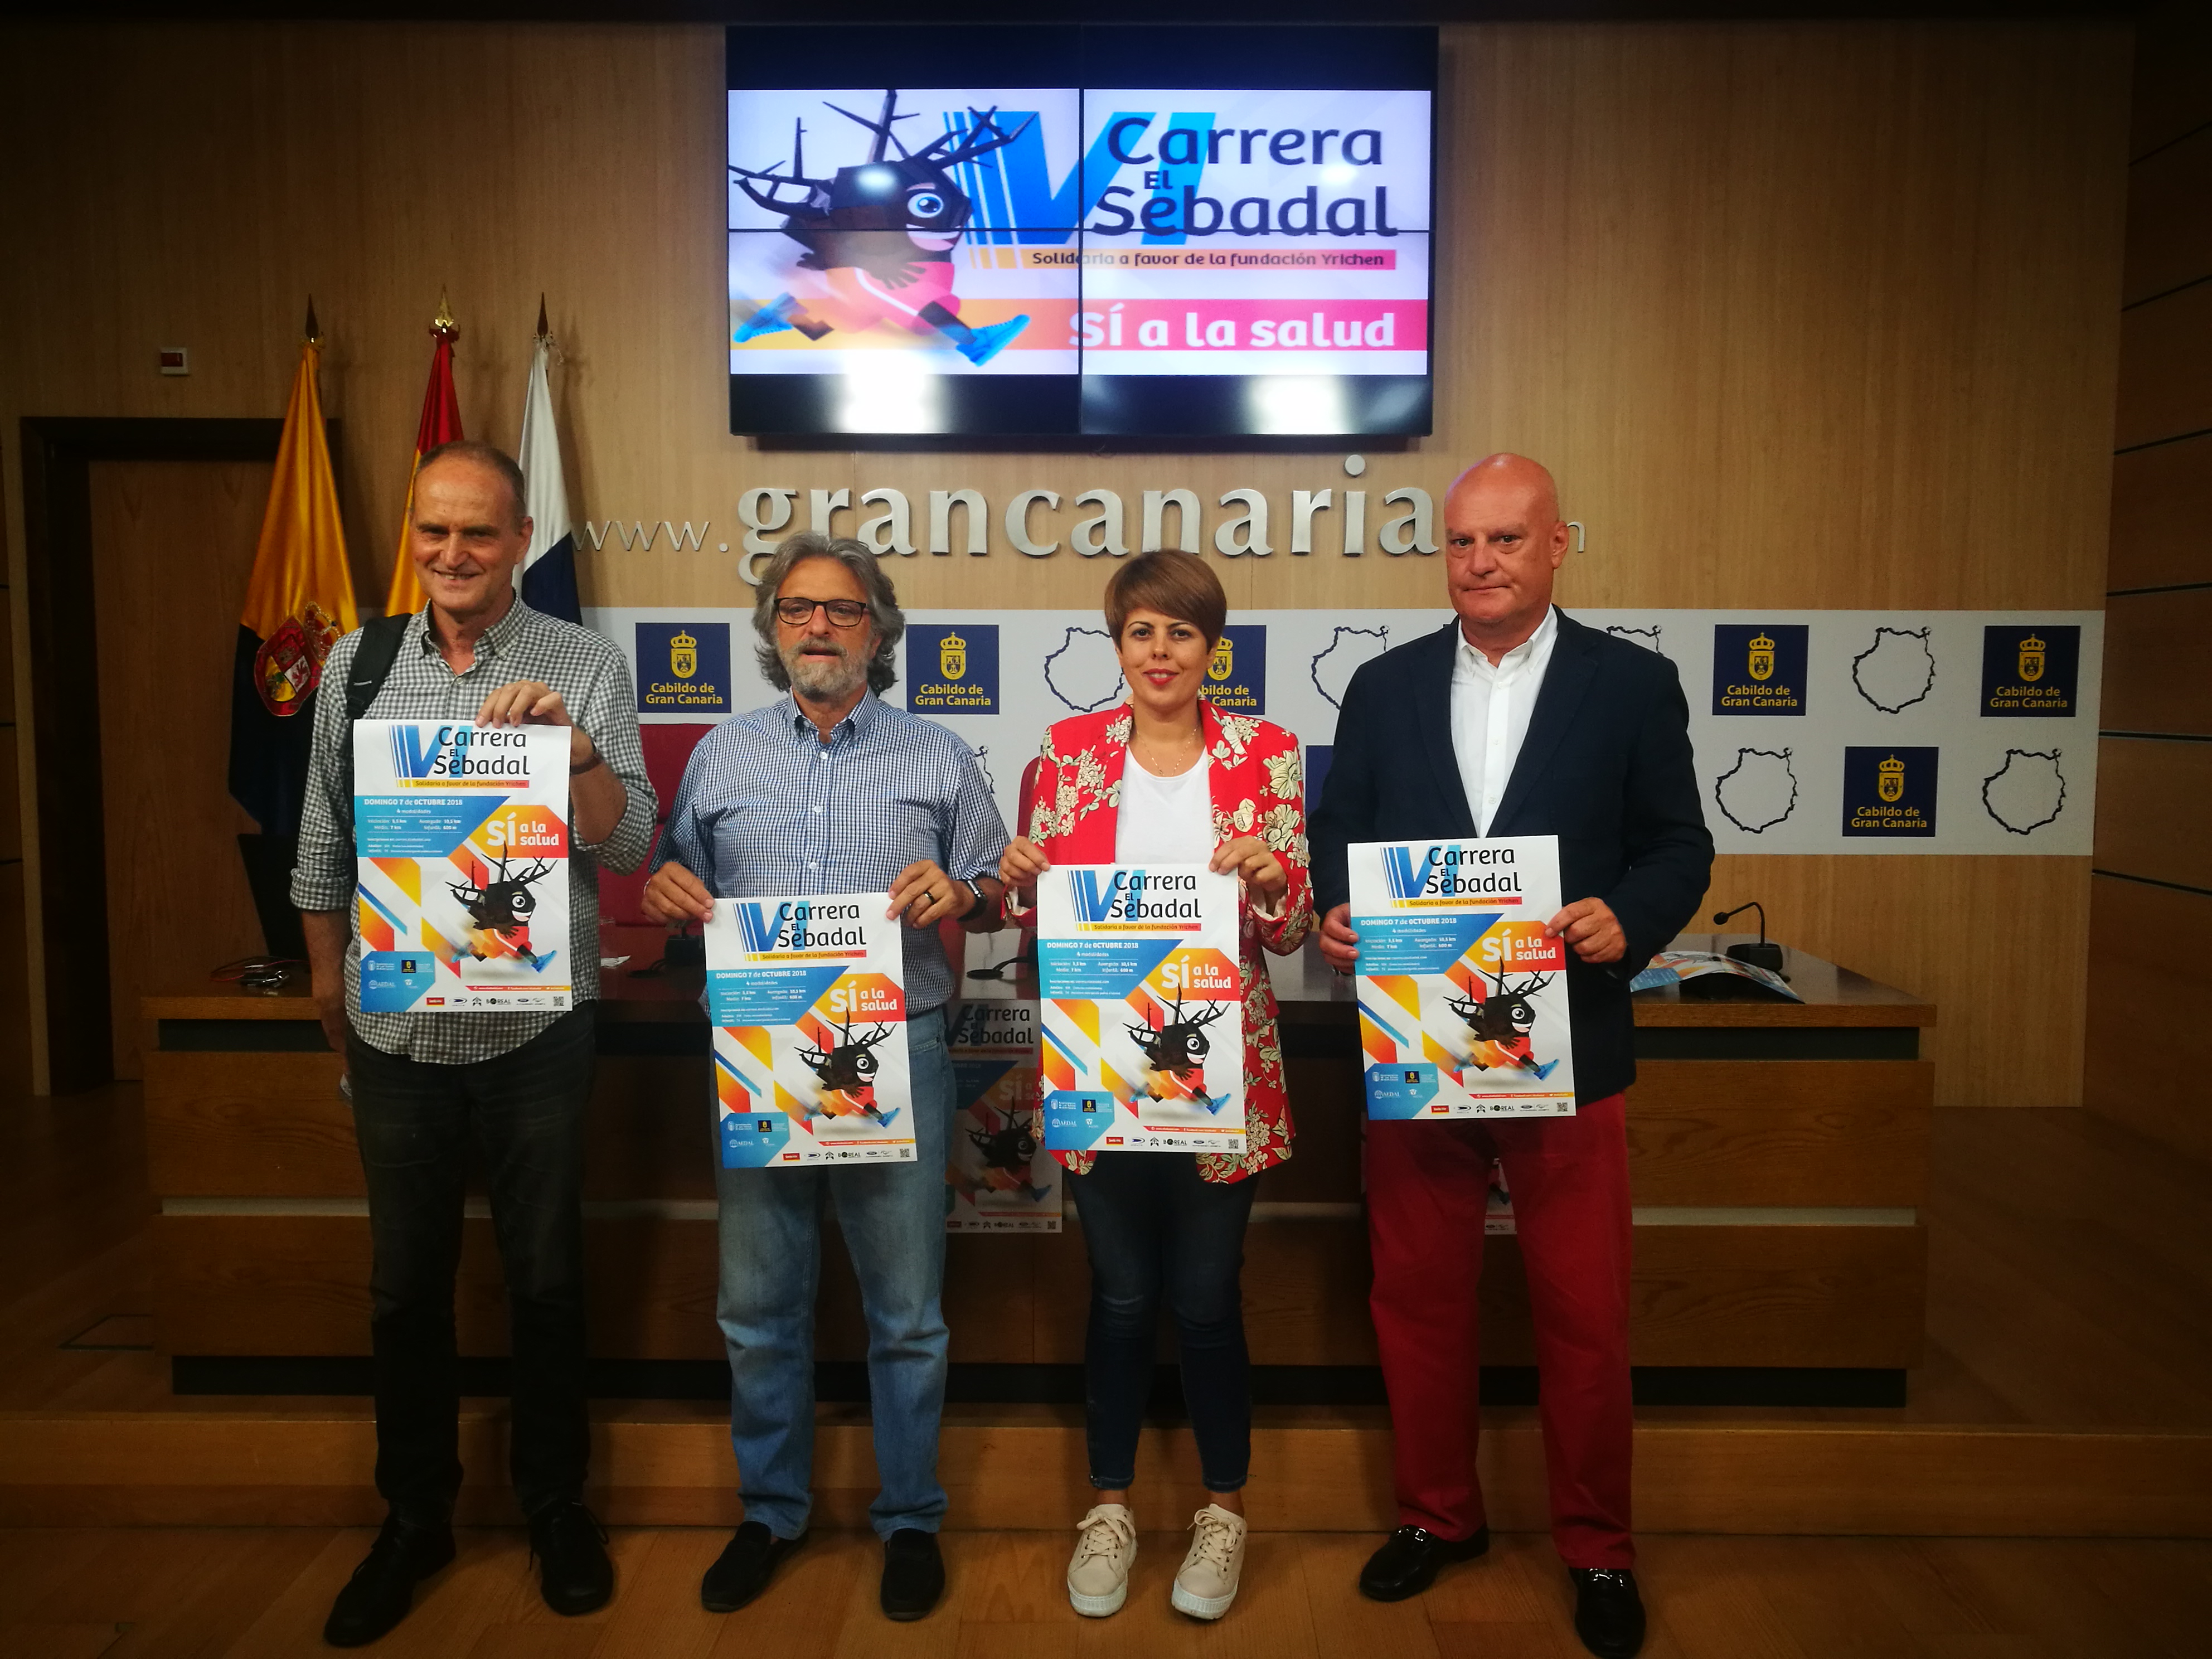 La Carrera solidaria El Sebadal en favor de Yrichen calienta motores en Gran Canaria con más de 200 personas inscritas